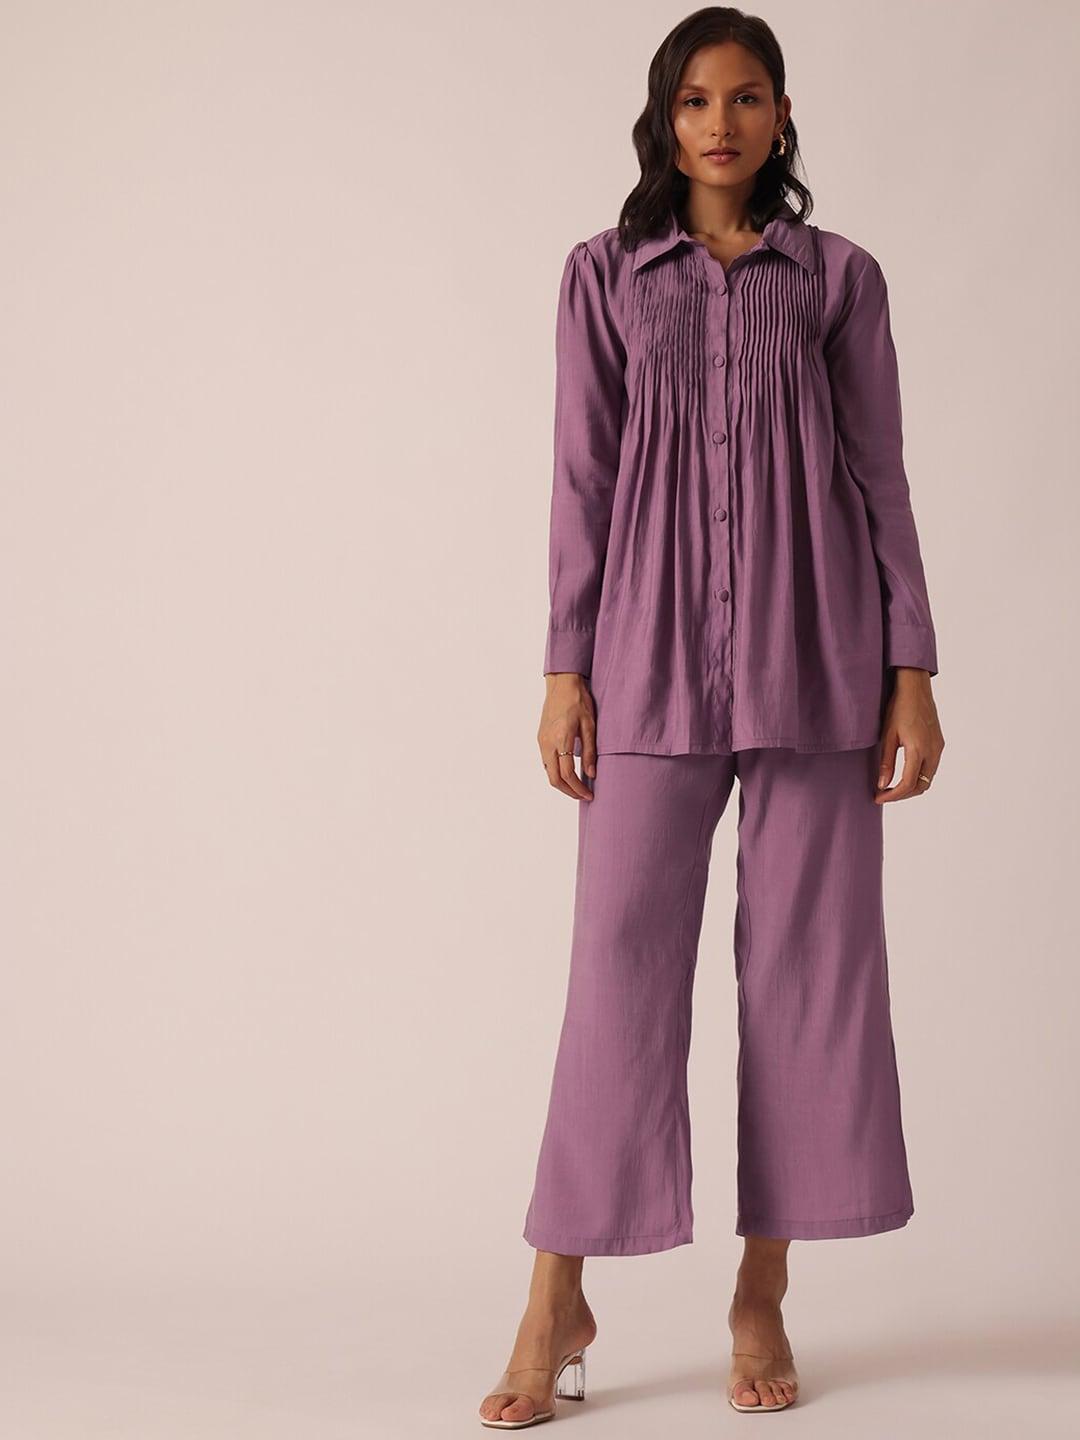 kalki fashion women purple